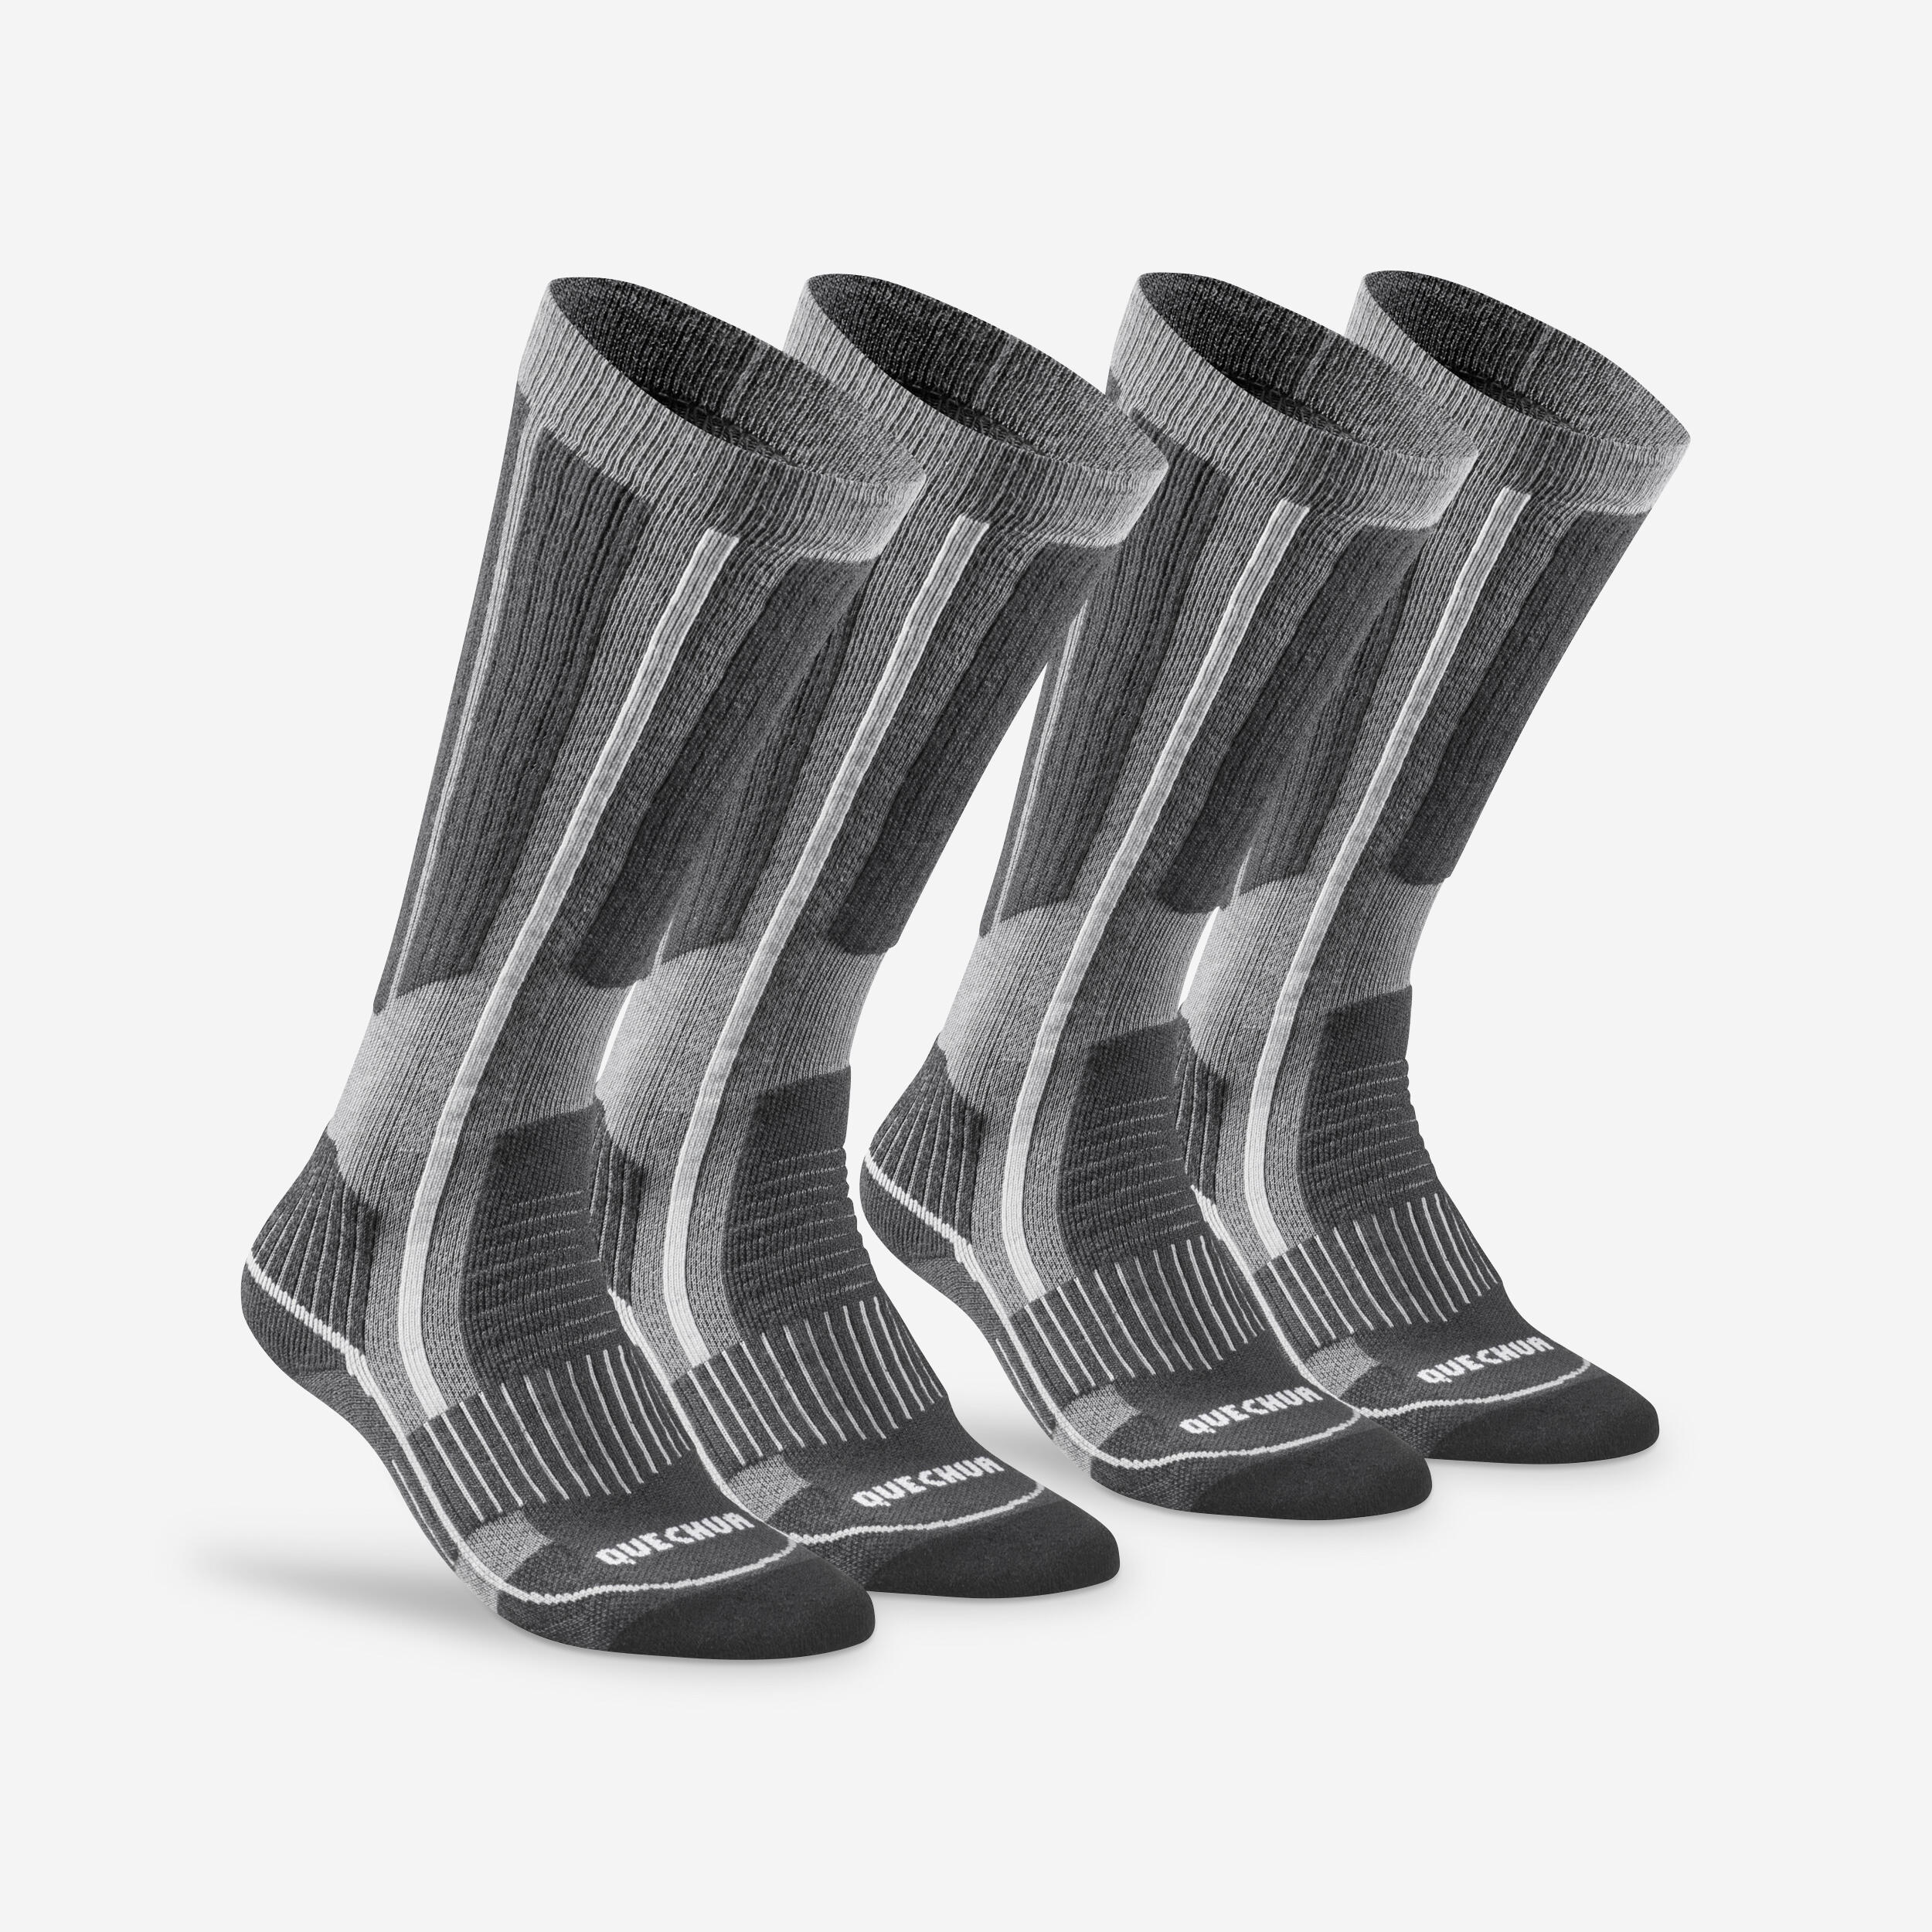 Chaussettes de randonnée - SH 500 gris - QUECHUA